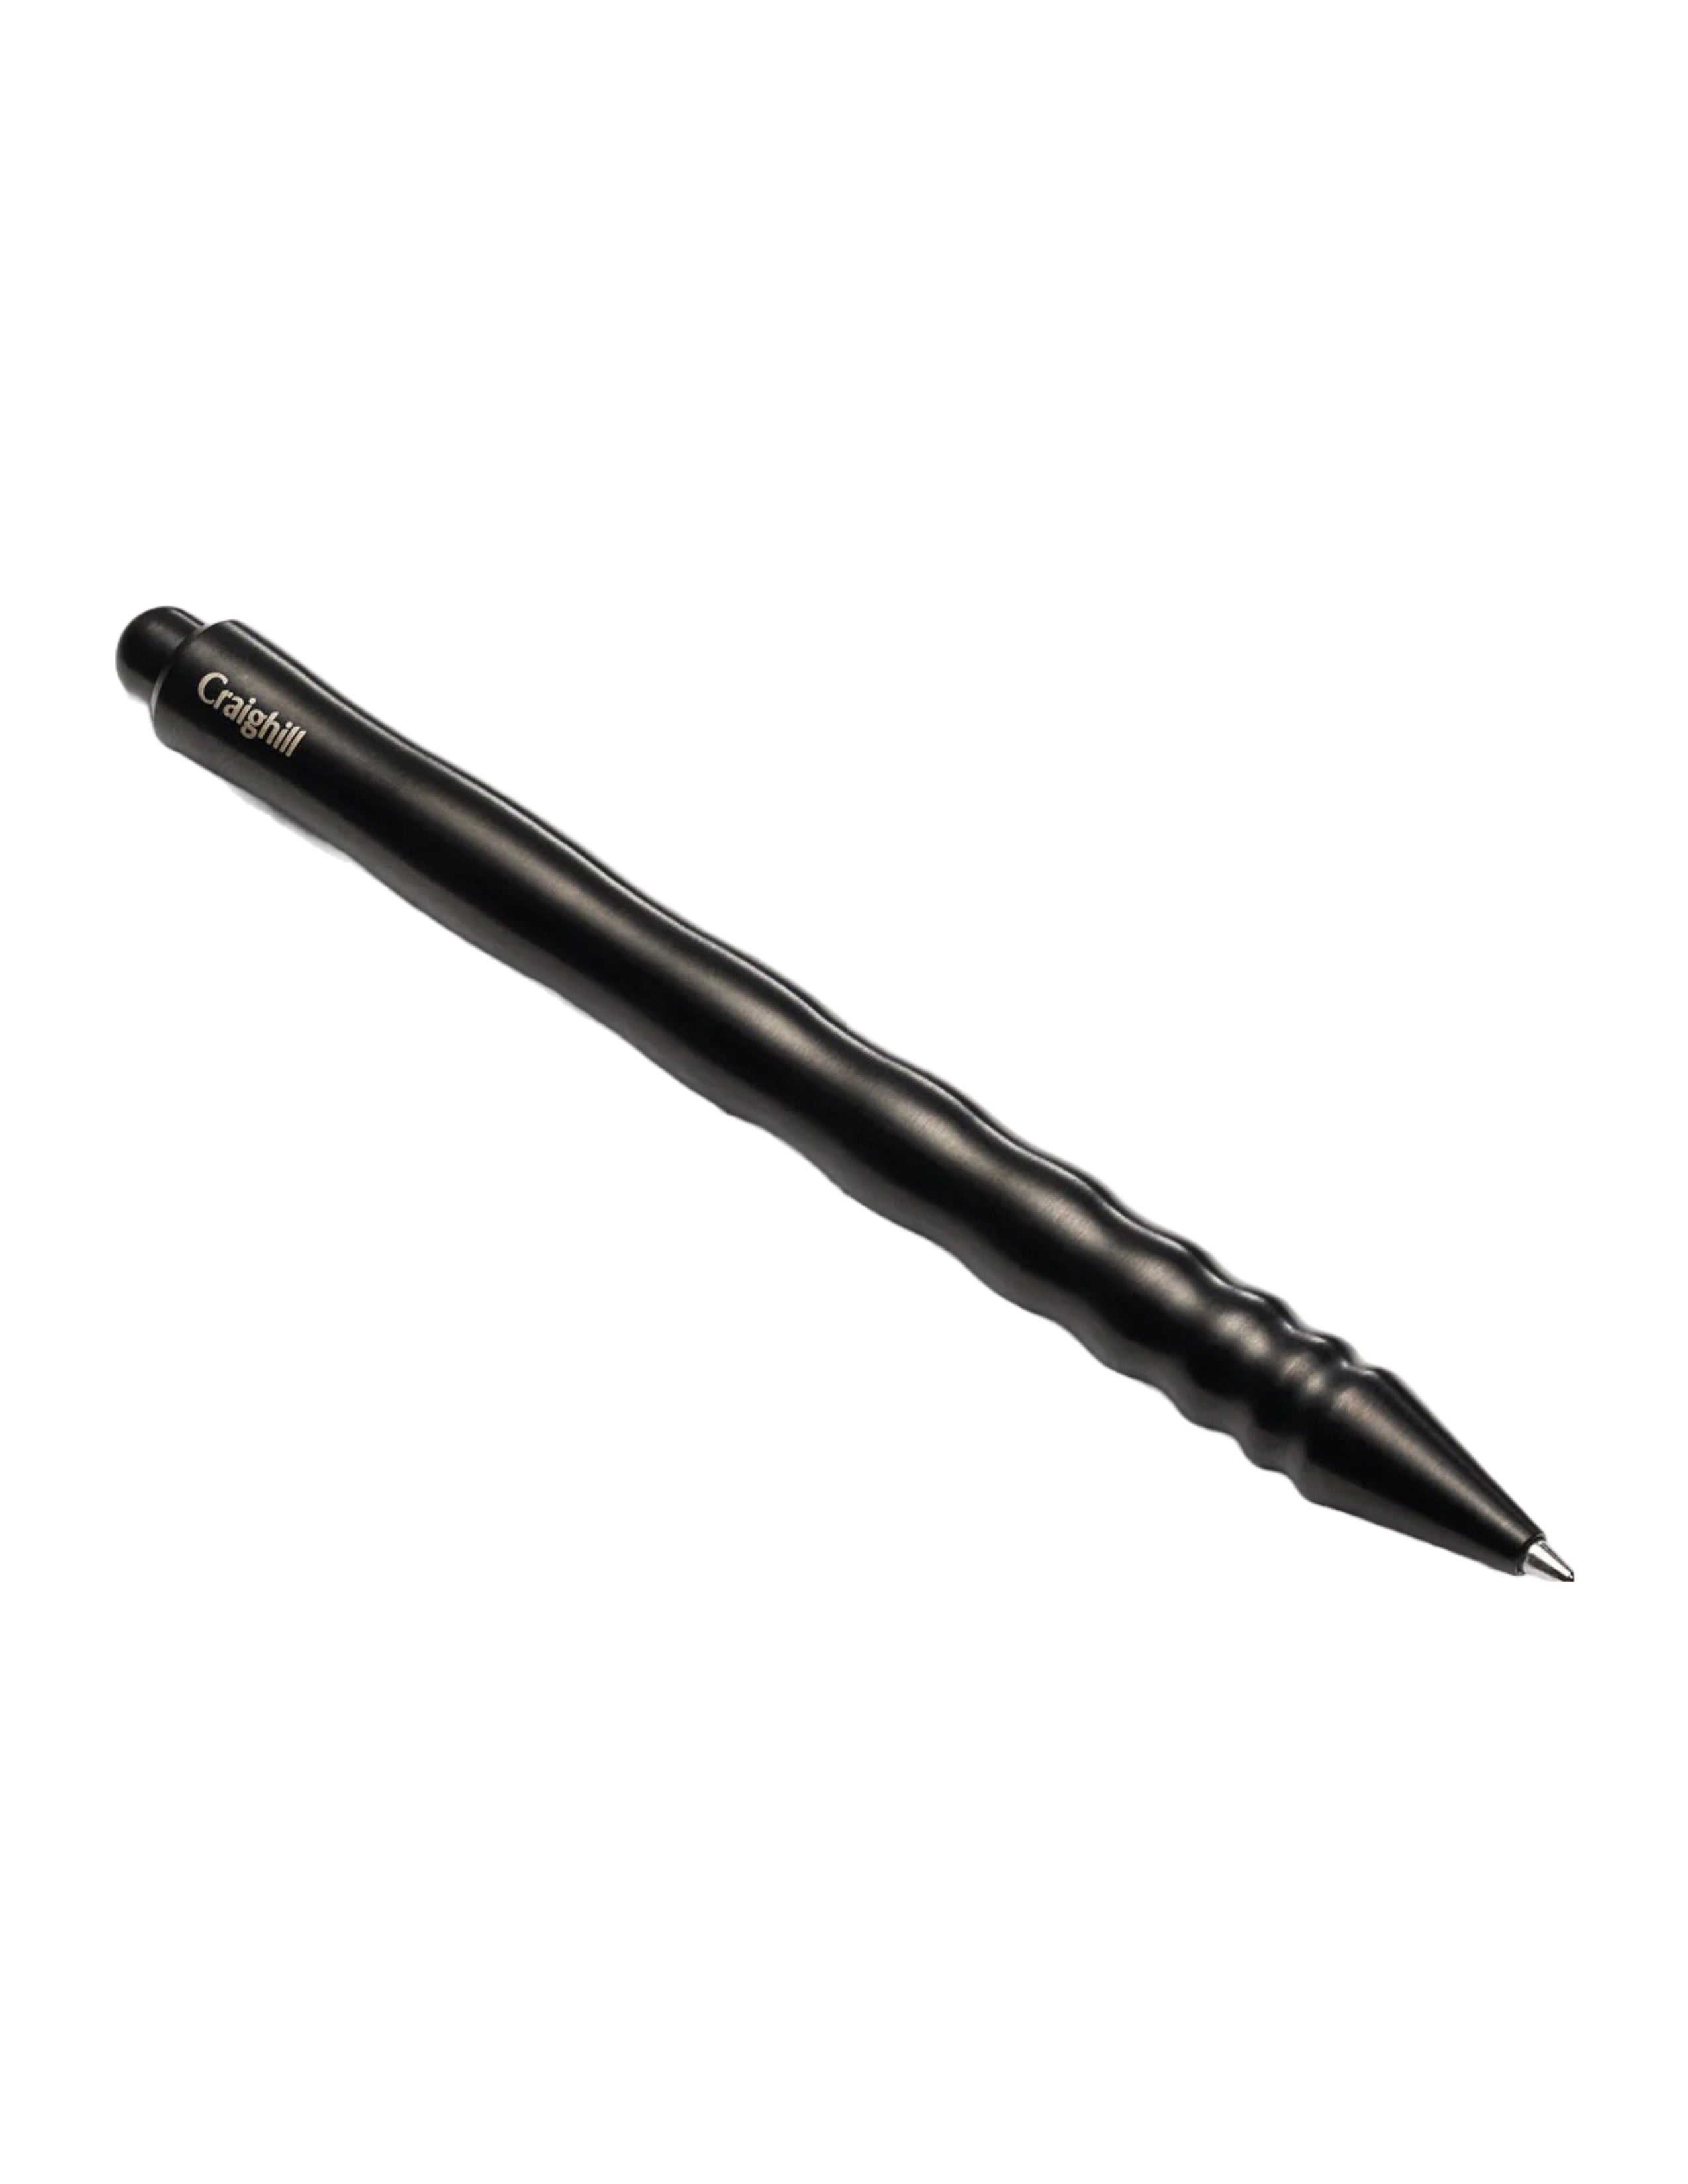 Kepler Pen - Vapor Black